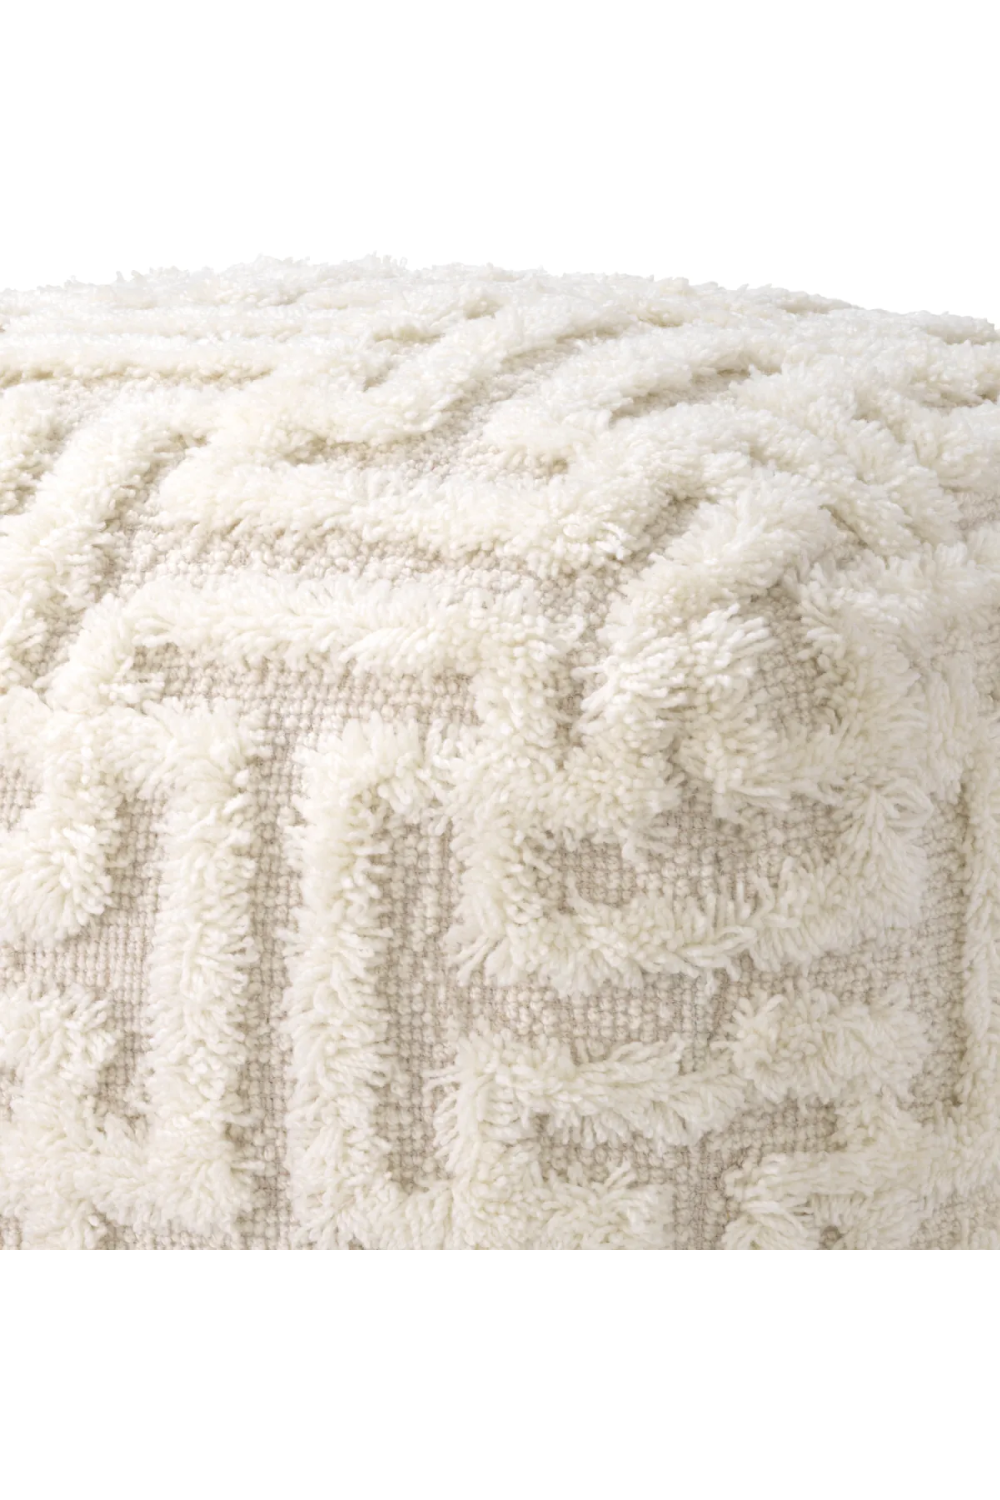 White Wool Maze Stool | Eichholtz Amphion | Oroa.com